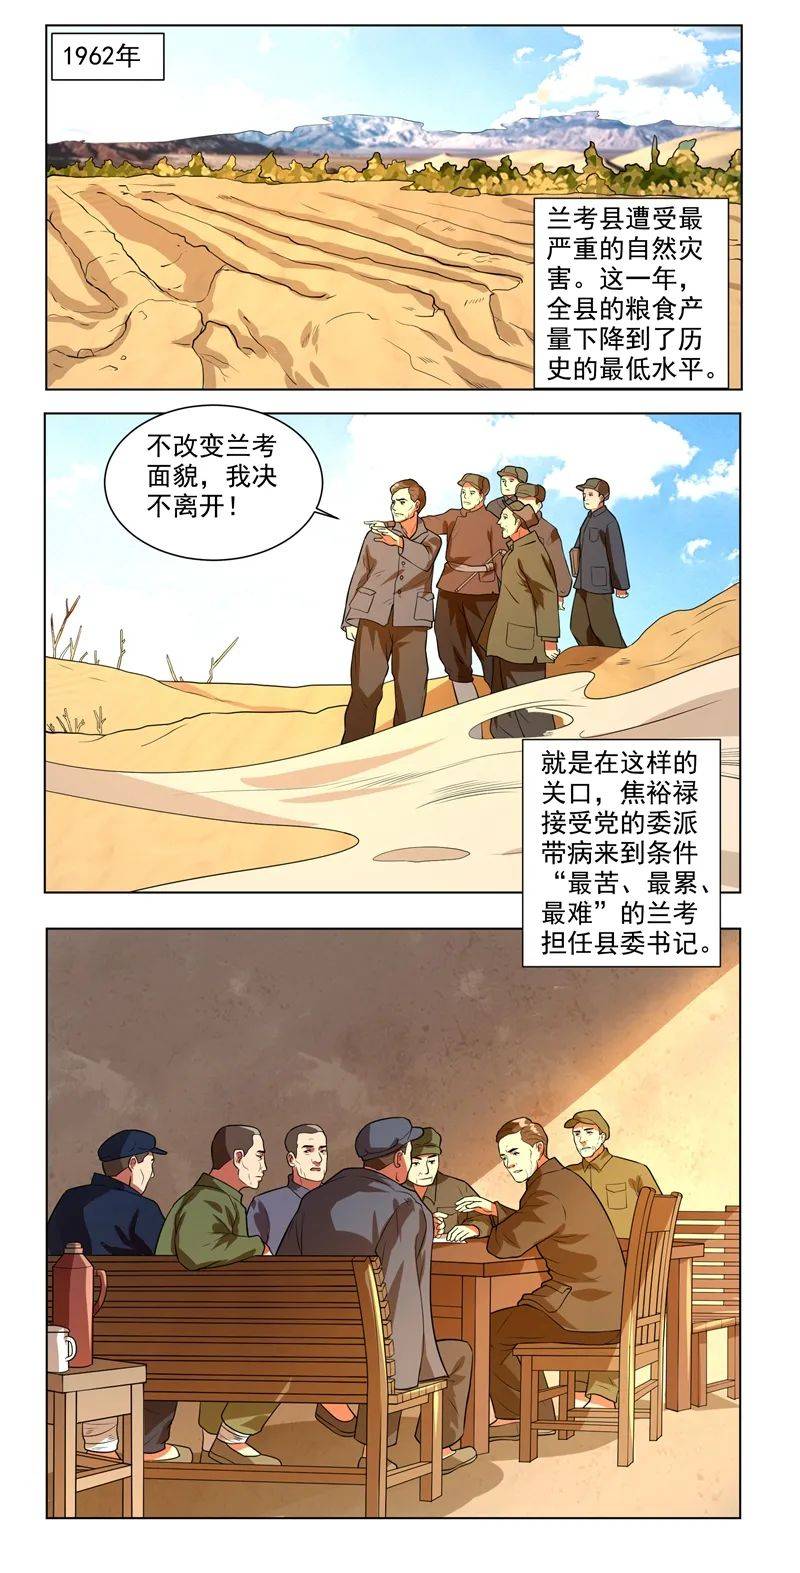 【学四史】漫画新中国史:焦裕禄